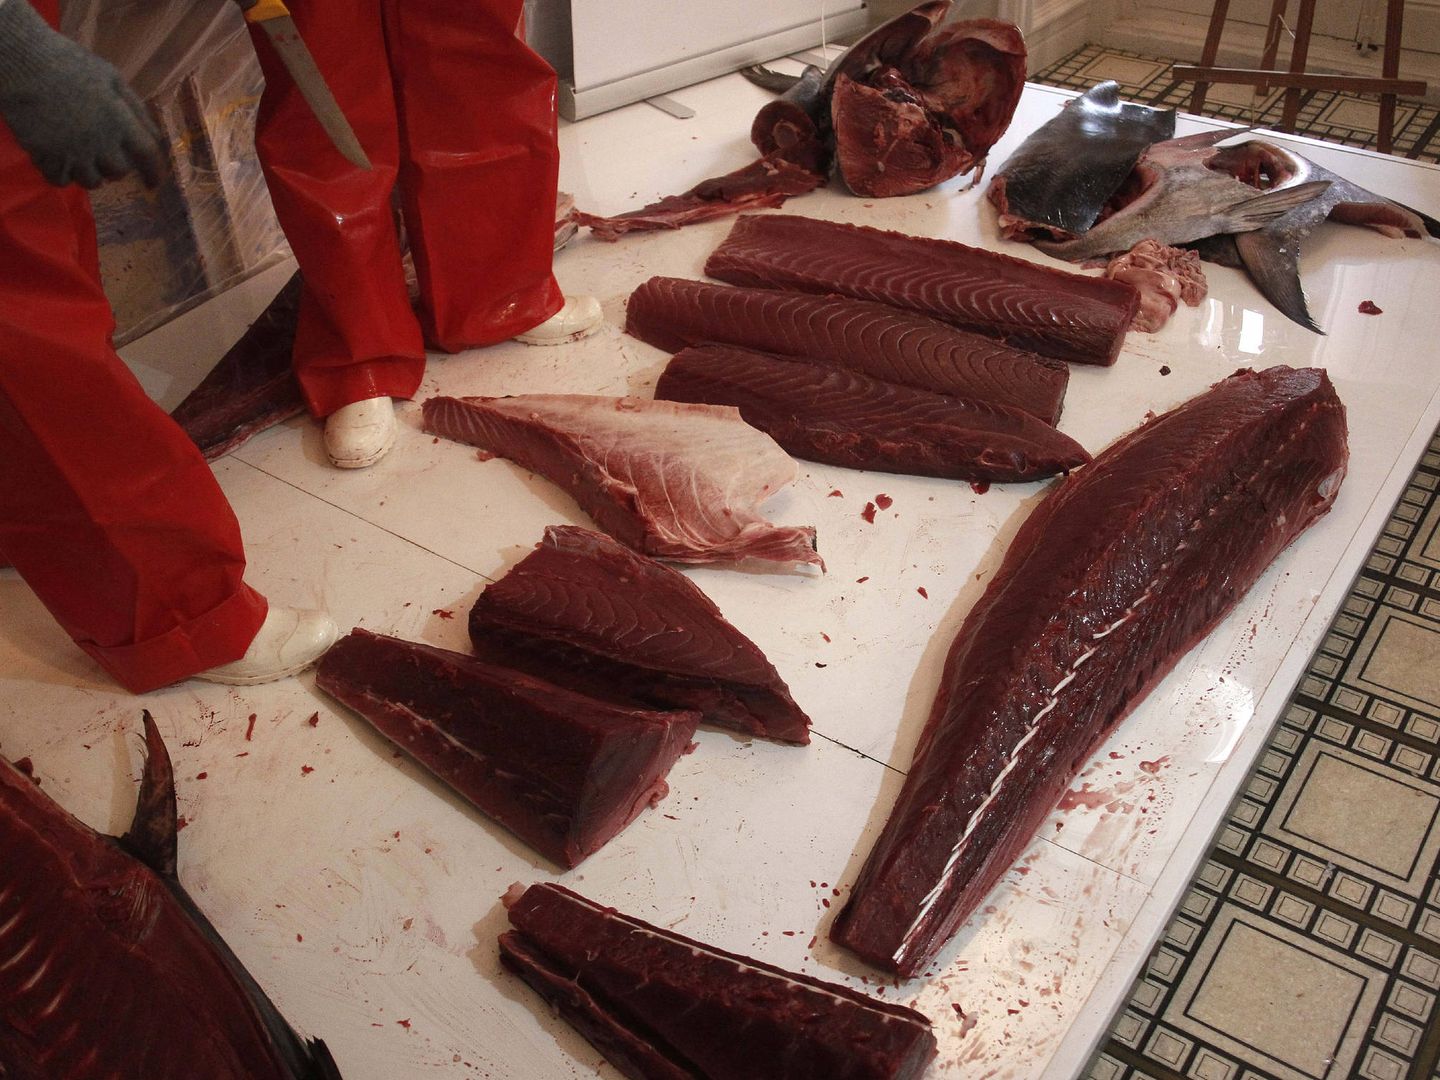 Despiece o ronqueo de un ejemplar de atún rojo en Barbate (Cádiz). (EFE)